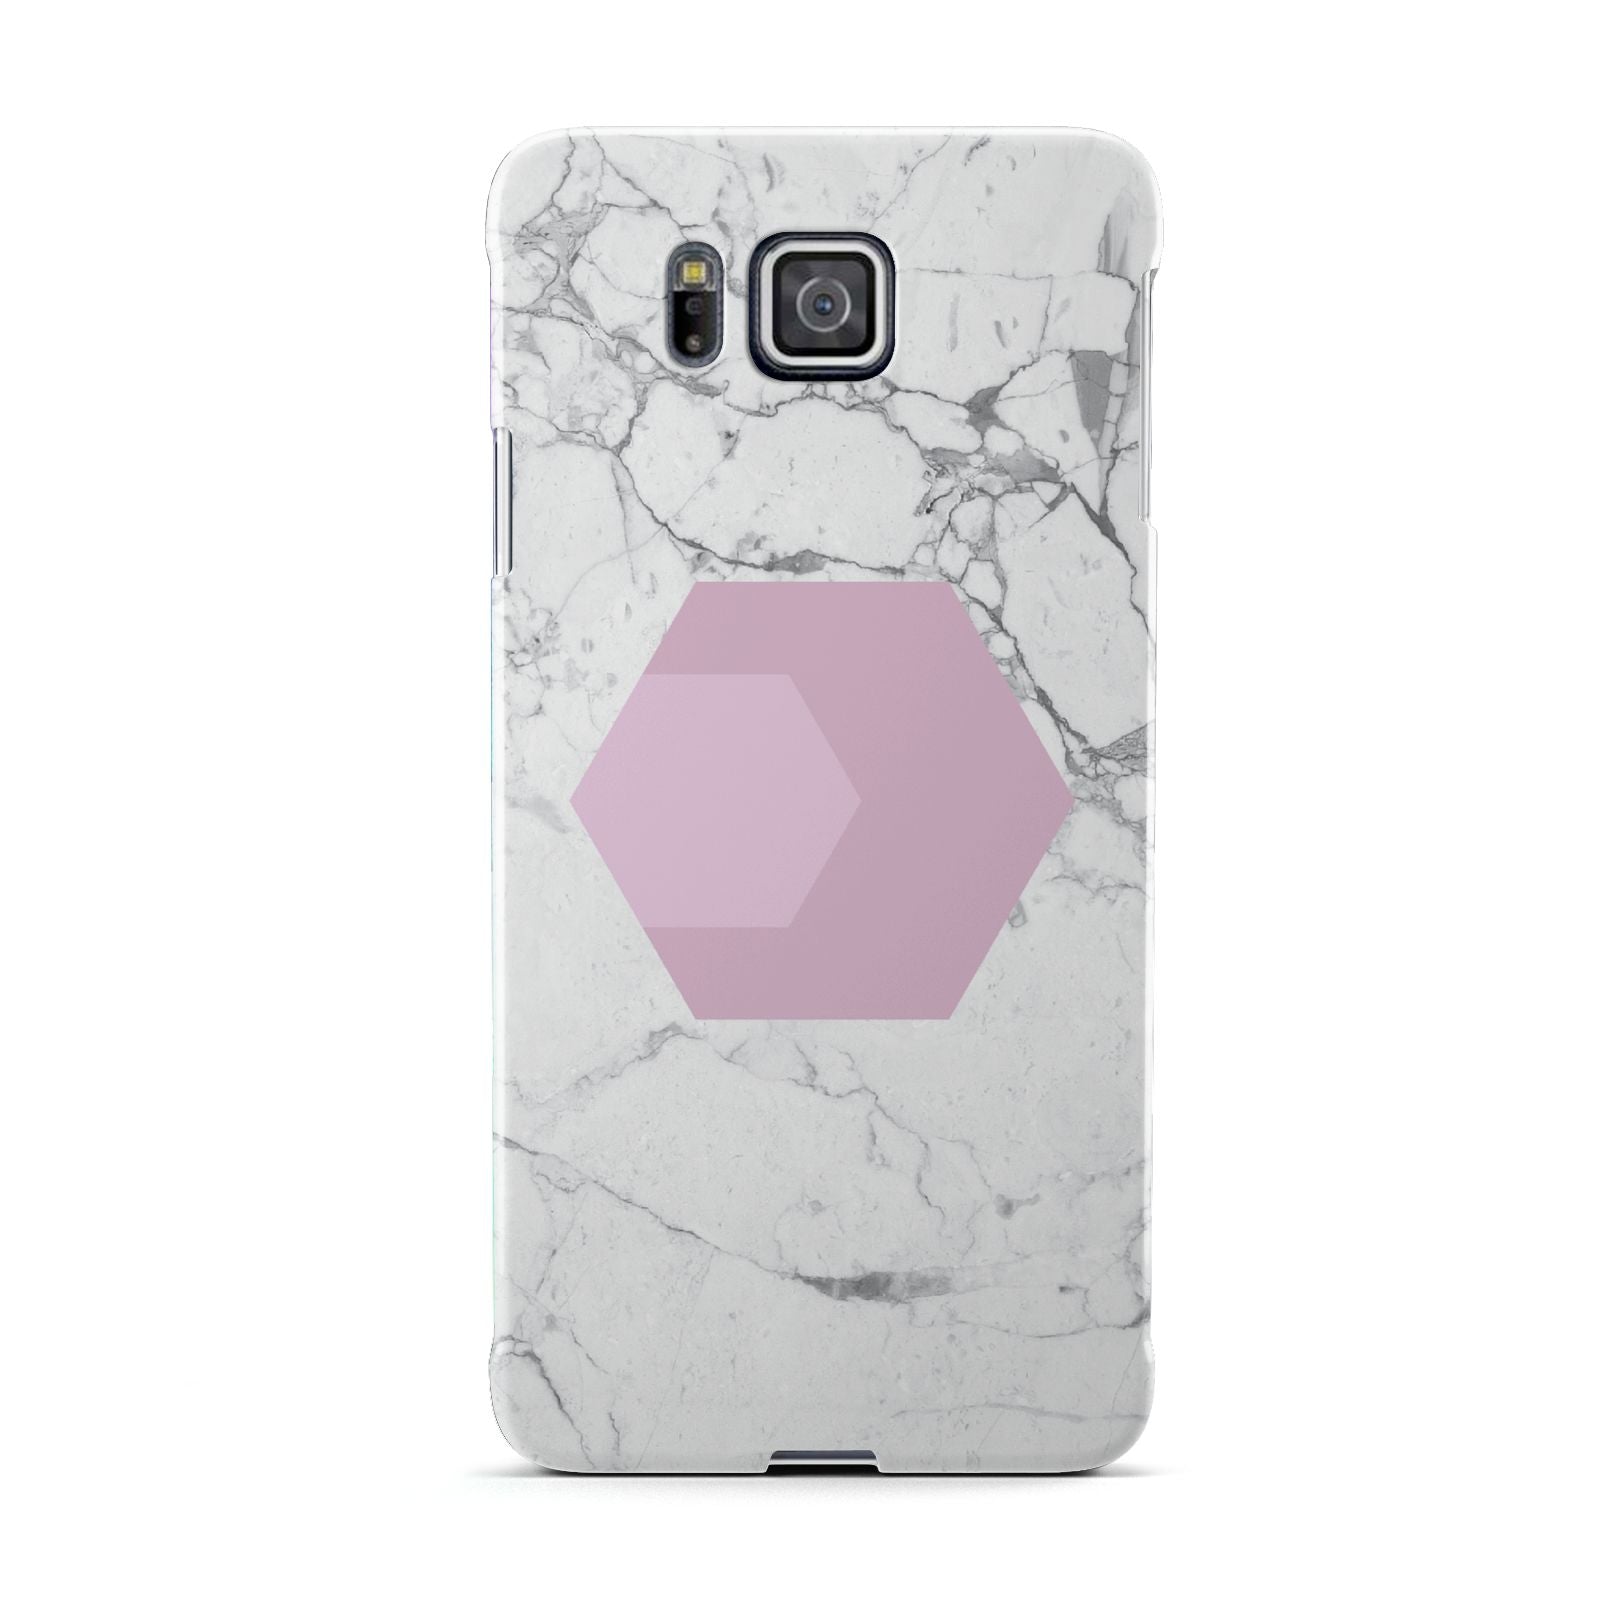 Marble White Grey Carrara Samsung Galaxy Alpha Case